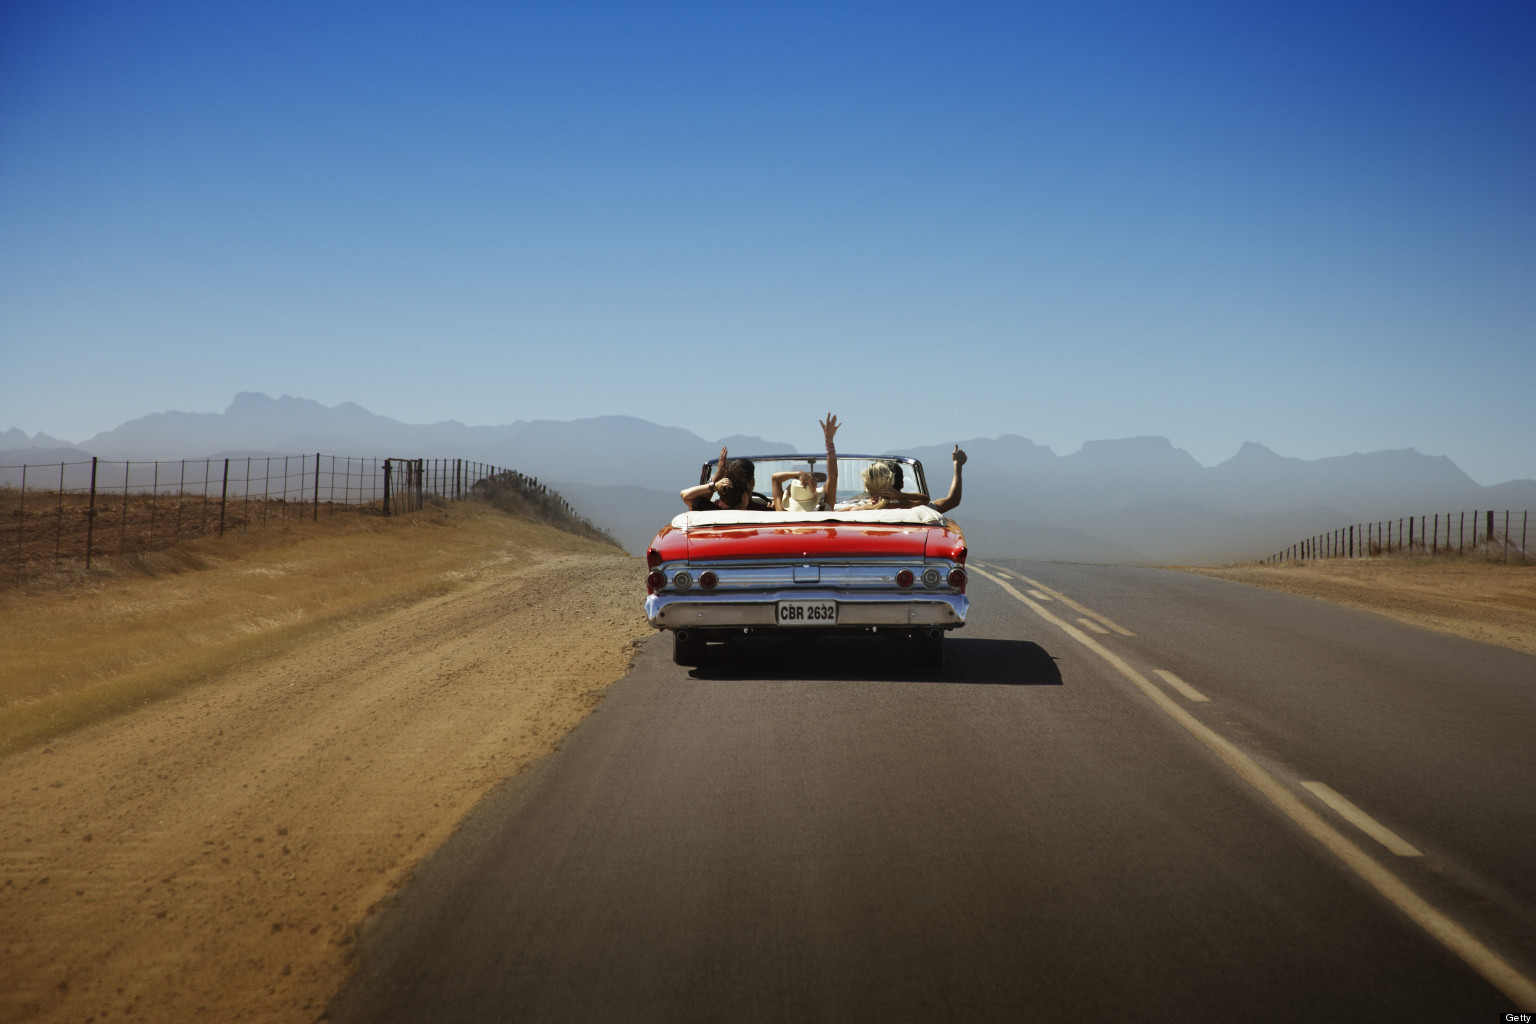 A dusty trip как ехать. Авто для путешествий. Путешествие на машине. Поездка на кабриолете. Машина на дороге в пустыне.